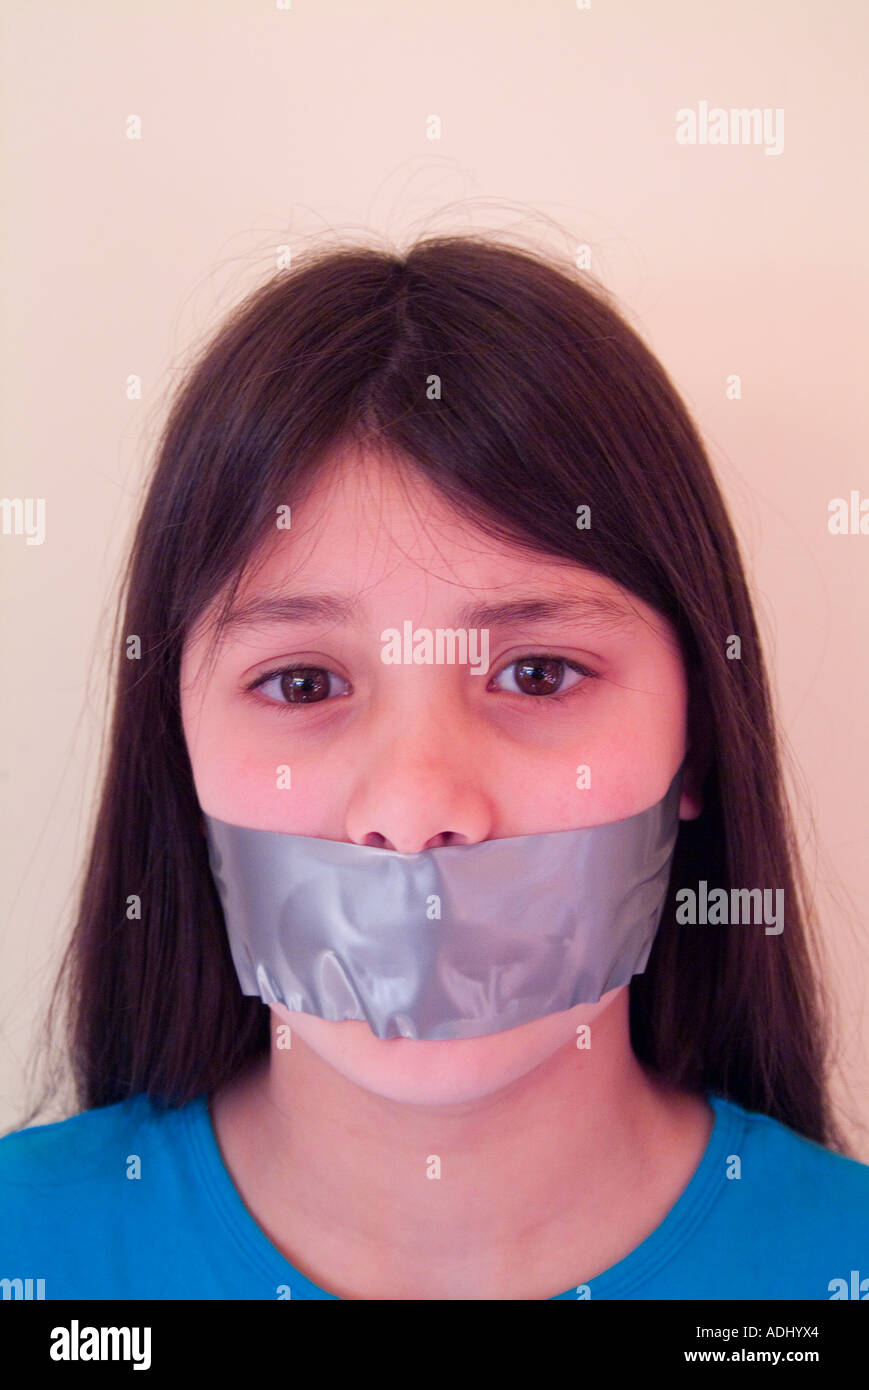 Jeune fille avec de la bande sur sa bouche pour illustrer la suppression de la liberté de parole Banque D'Images